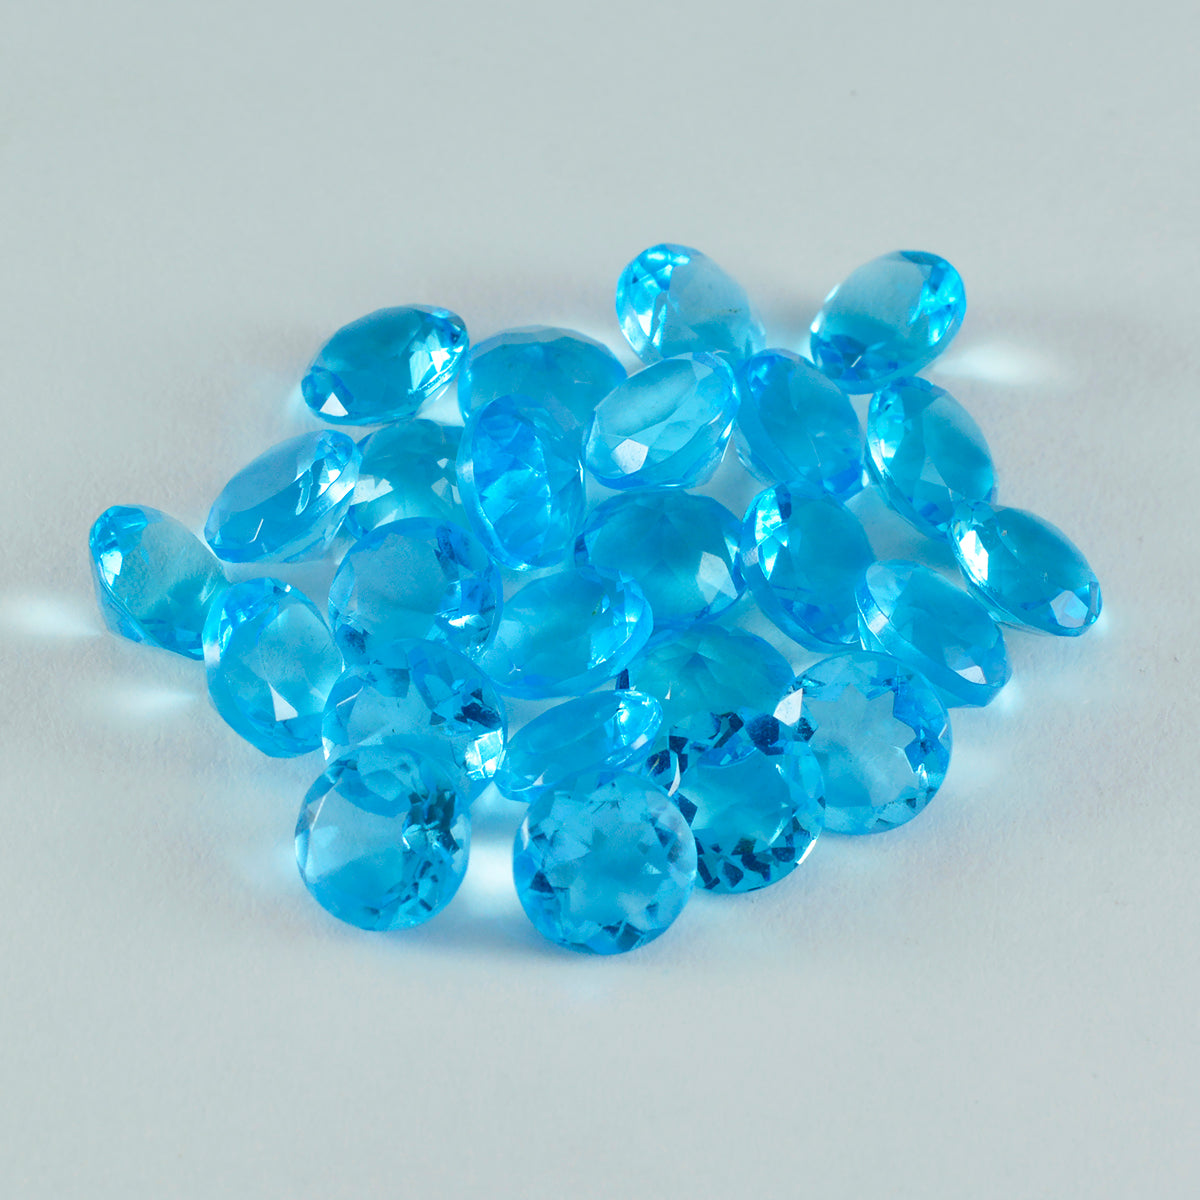 Riyogems 1 pieza de topacio azul CZ facetado 0.315 x 0.315 in forma redonda linda calidad piedra preciosa suelta